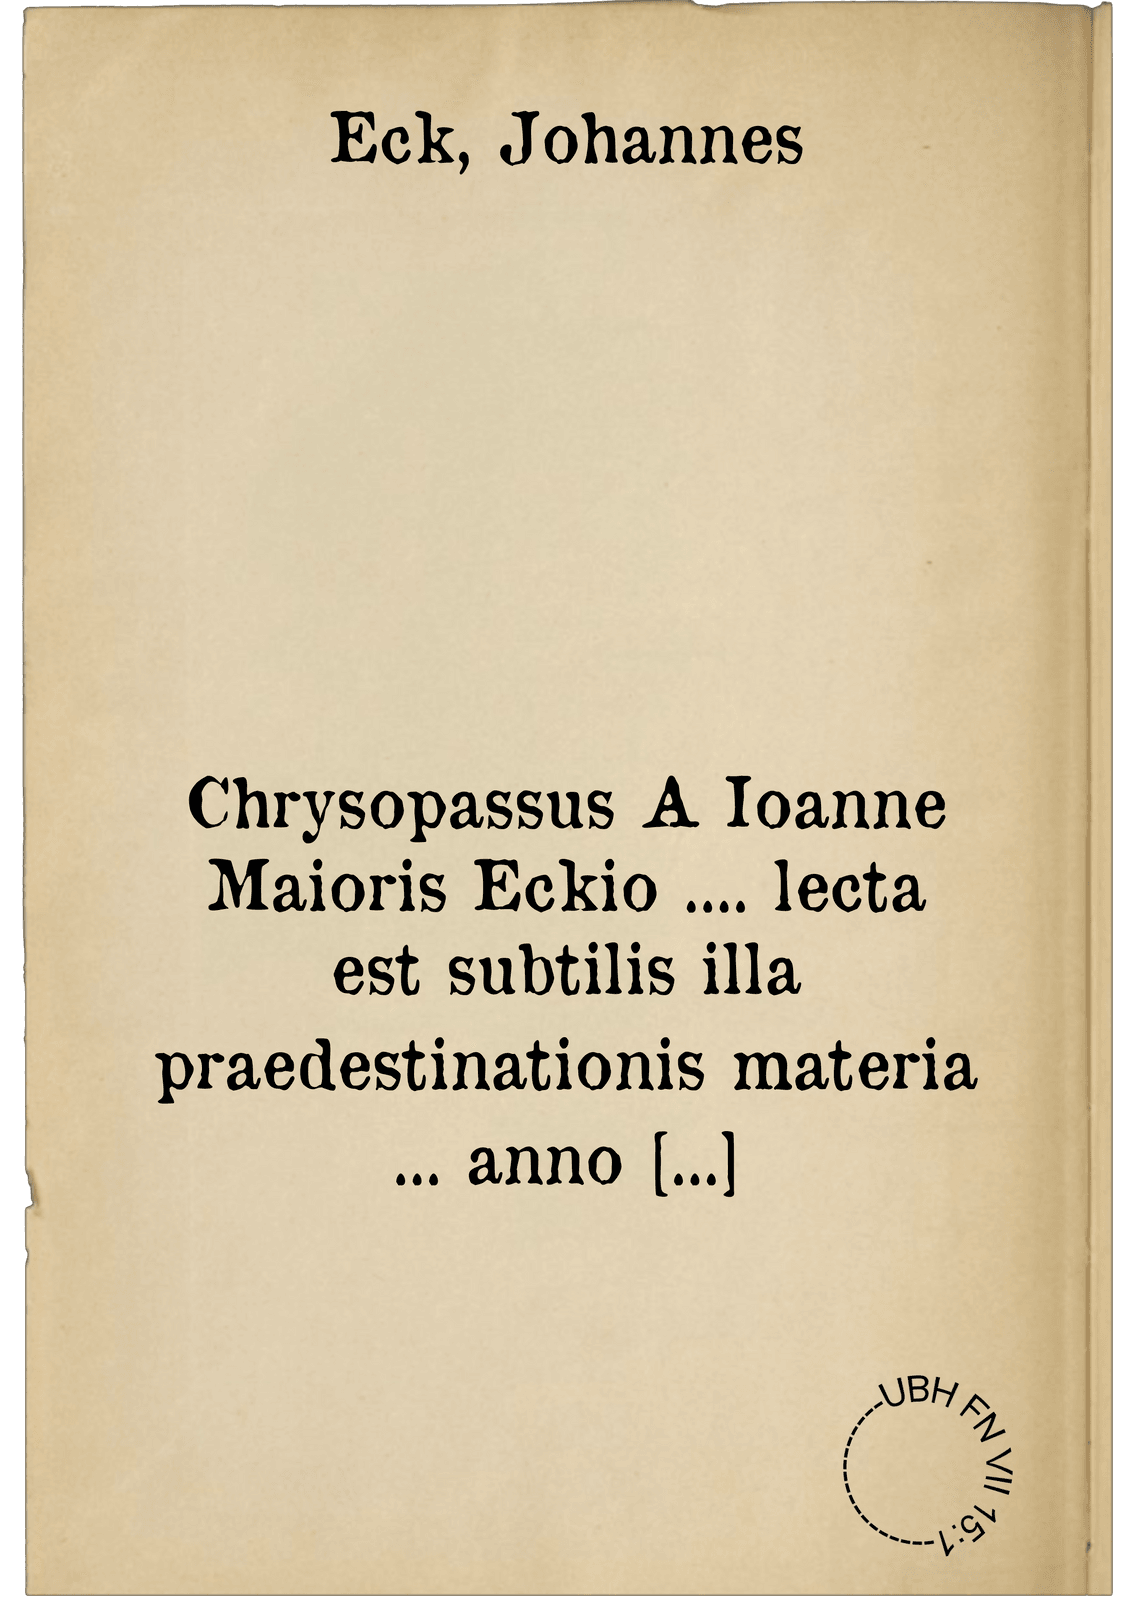 Chrysopassus A Ioanne Maioris Eckio .... lecta est subtilis illa praedestinationis materia ... anno ... D. XII